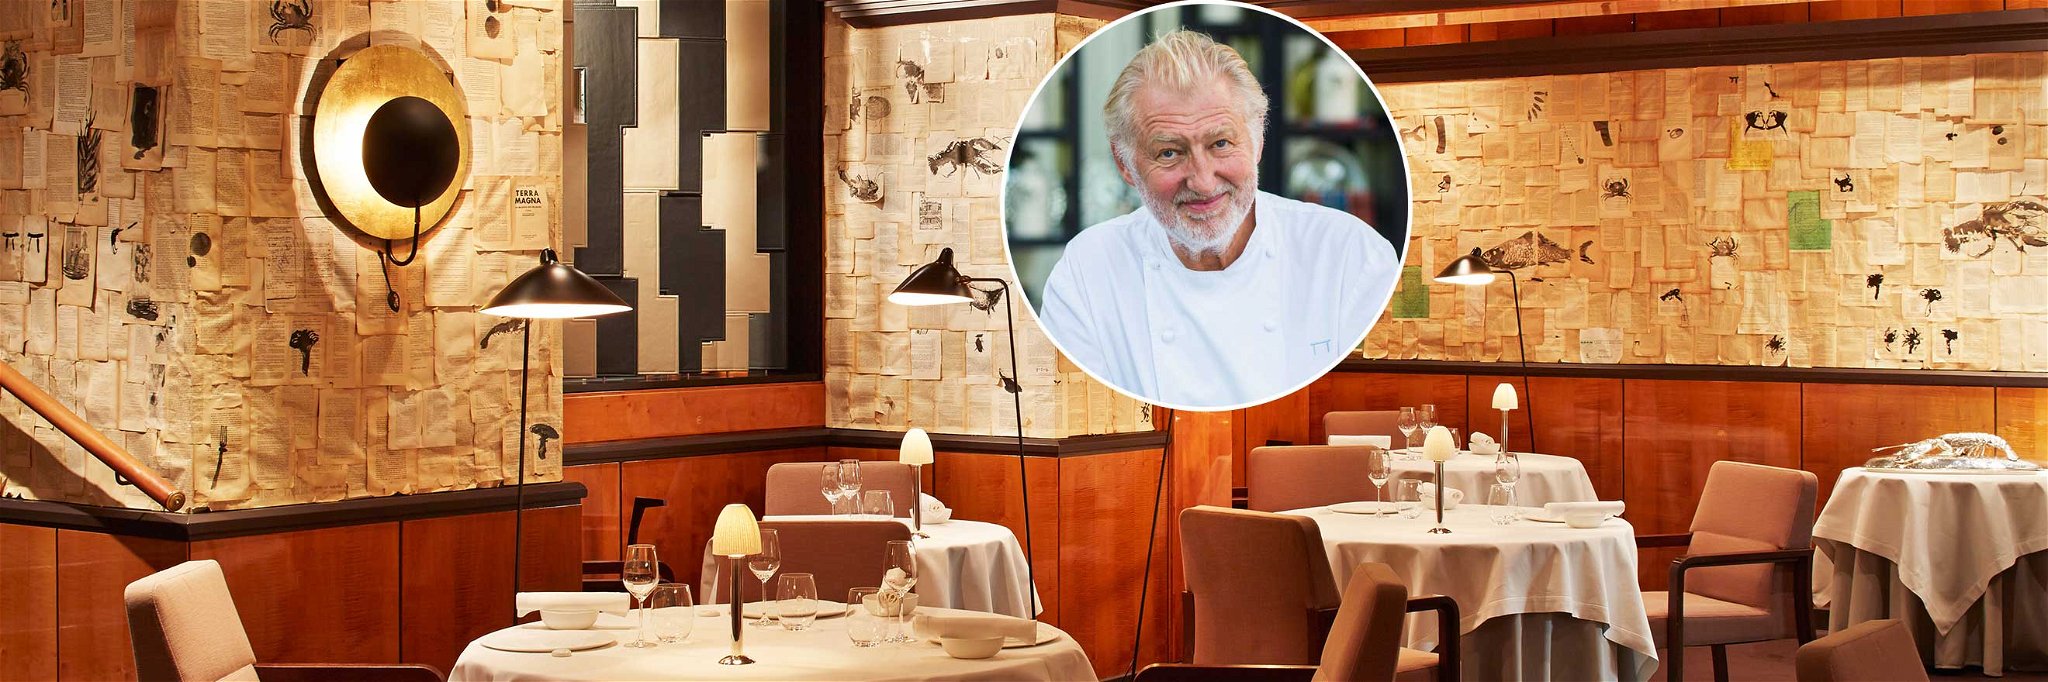 Eindrucksvolle Persönlichkeit: Der französische Koch Pierre Gagnaire führt unter seinem Namen ein Drei-Sterne-Restaurant in Paris.&nbsp;